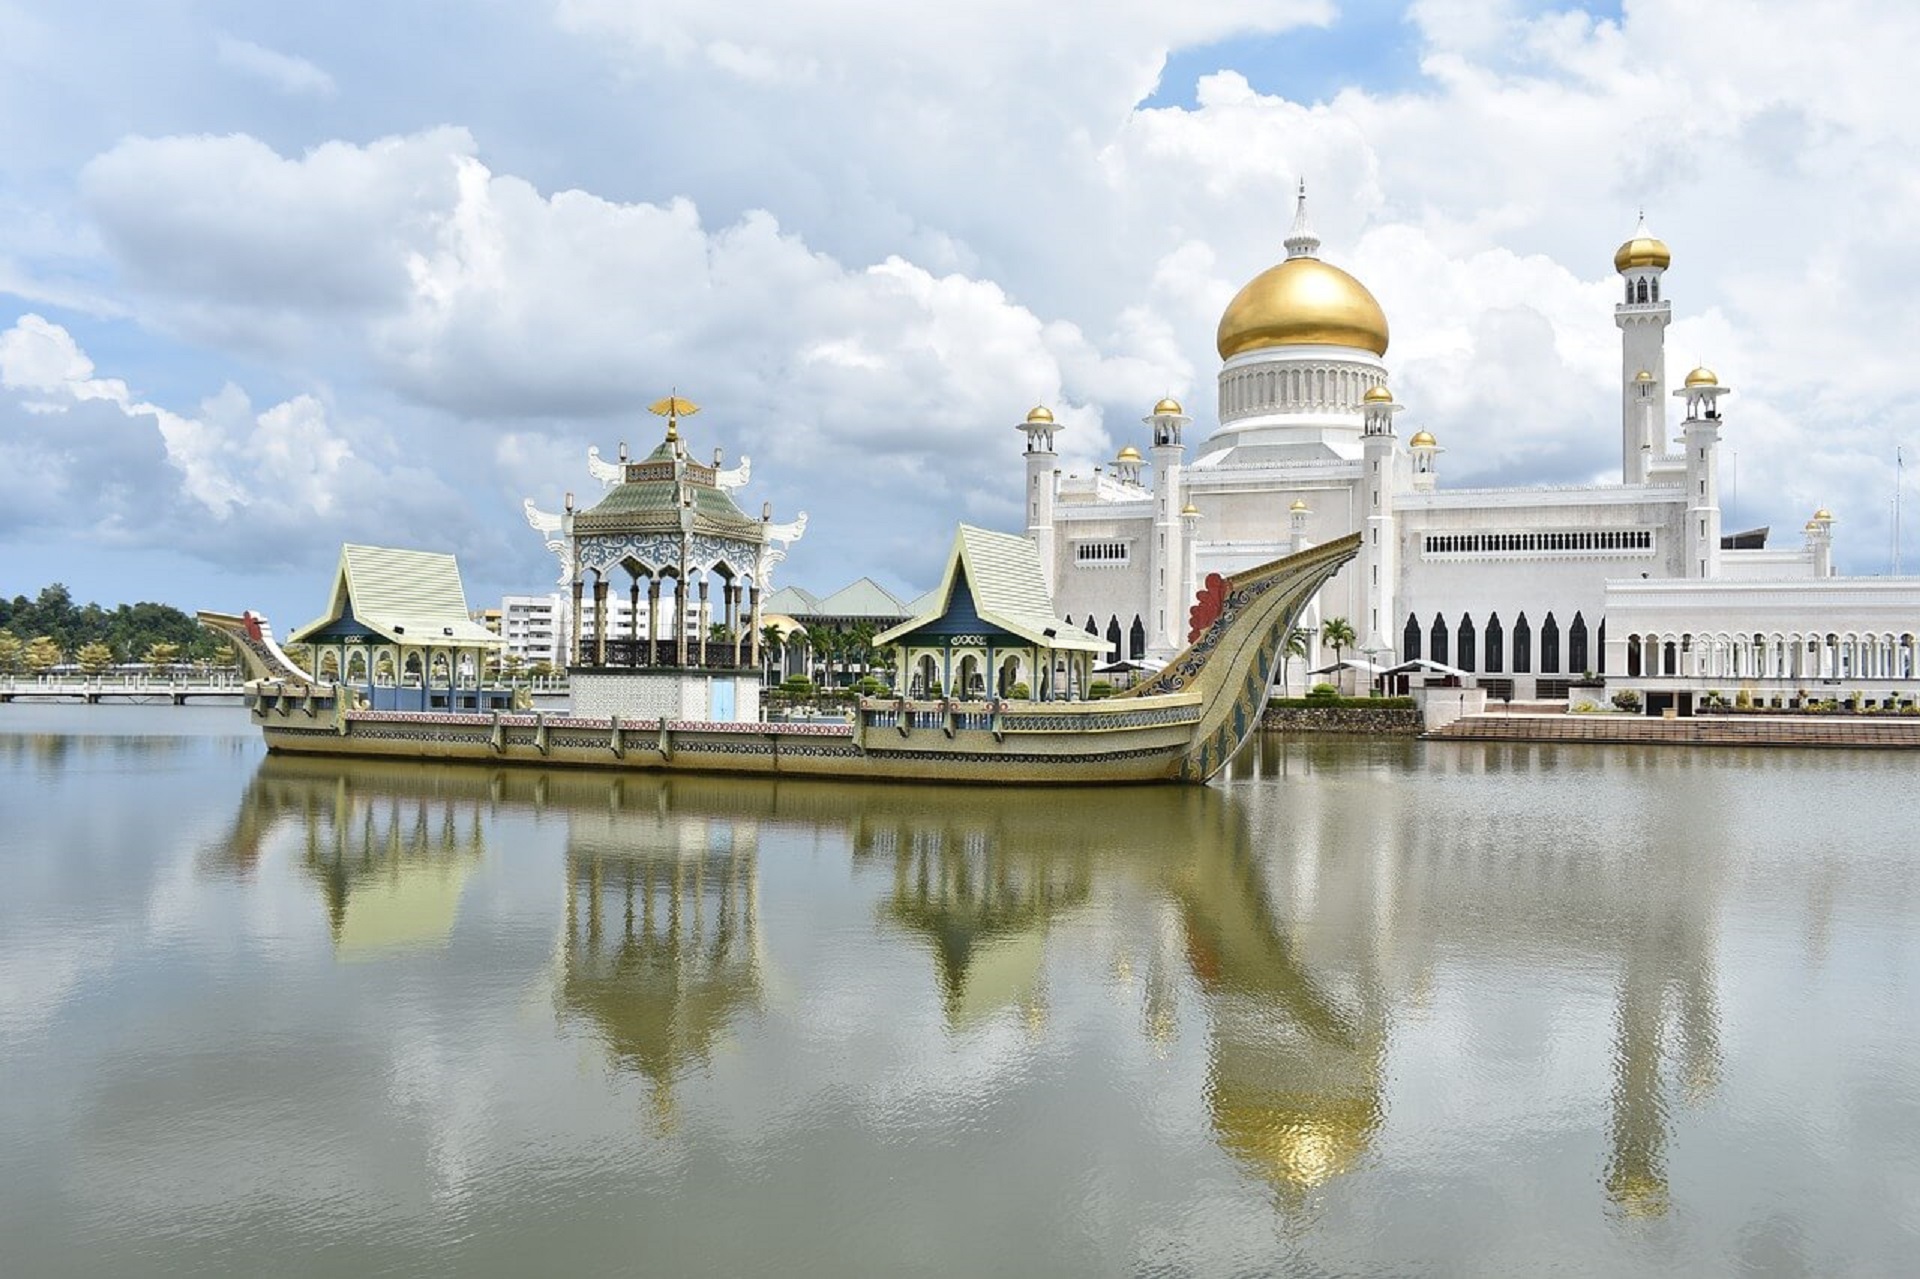 Brunei darussalam bergabung menjadi anggota asean pada tanggal